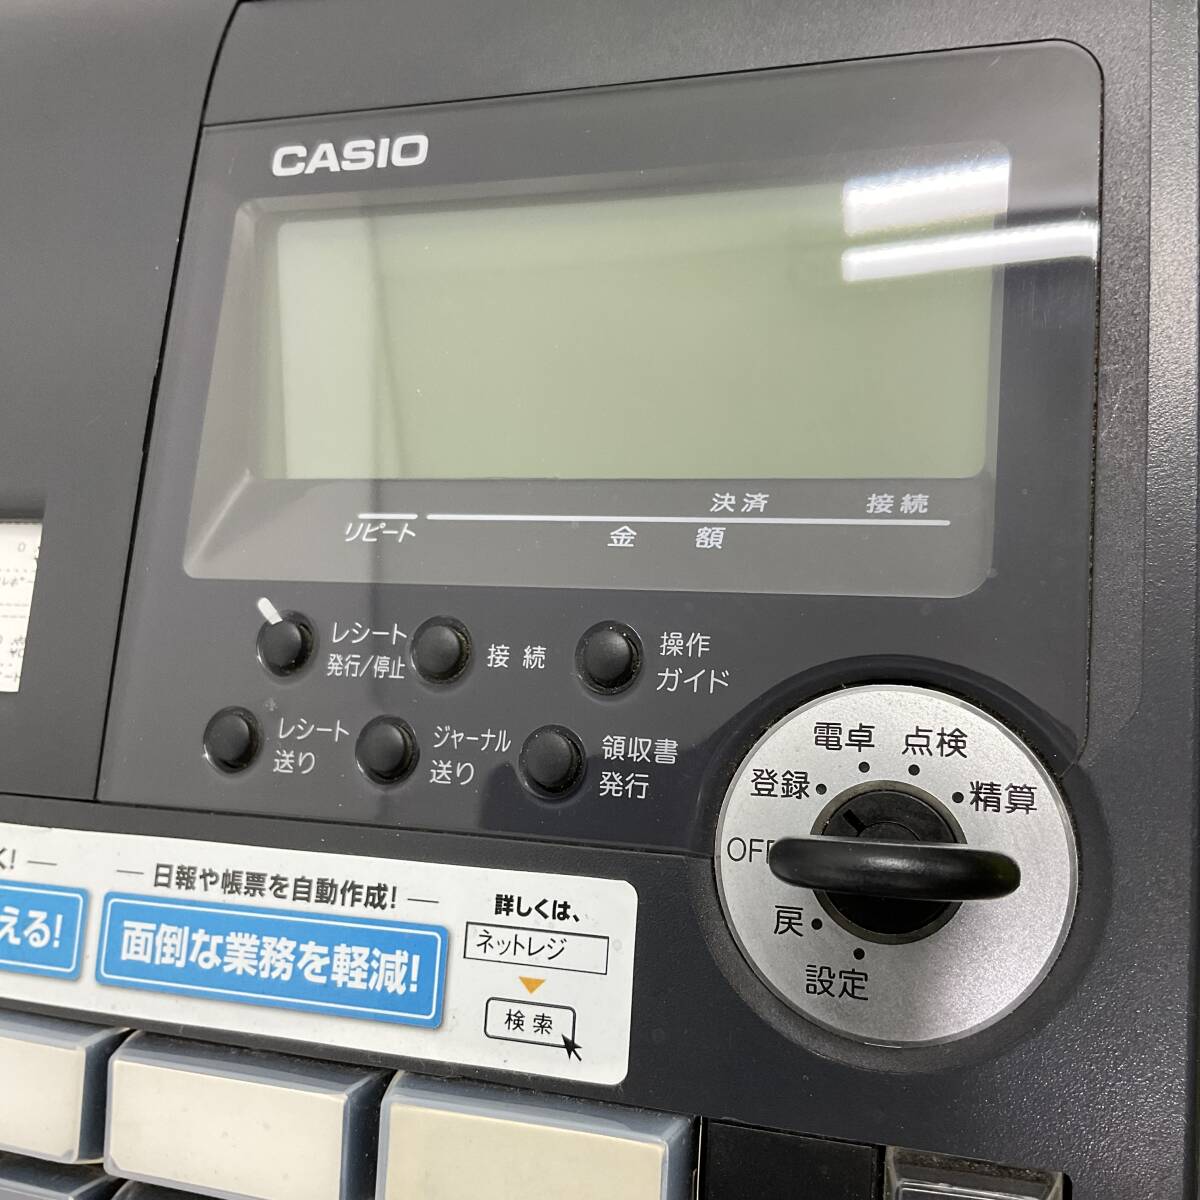  Casio электронный резистор TE-2600 NM-2000 несколько налог показатель уменьшение налог показатель соответствующая модель черный чёрный сеть rejiCASIO 25 группа работа OK есть руководство пользователя (C1145)